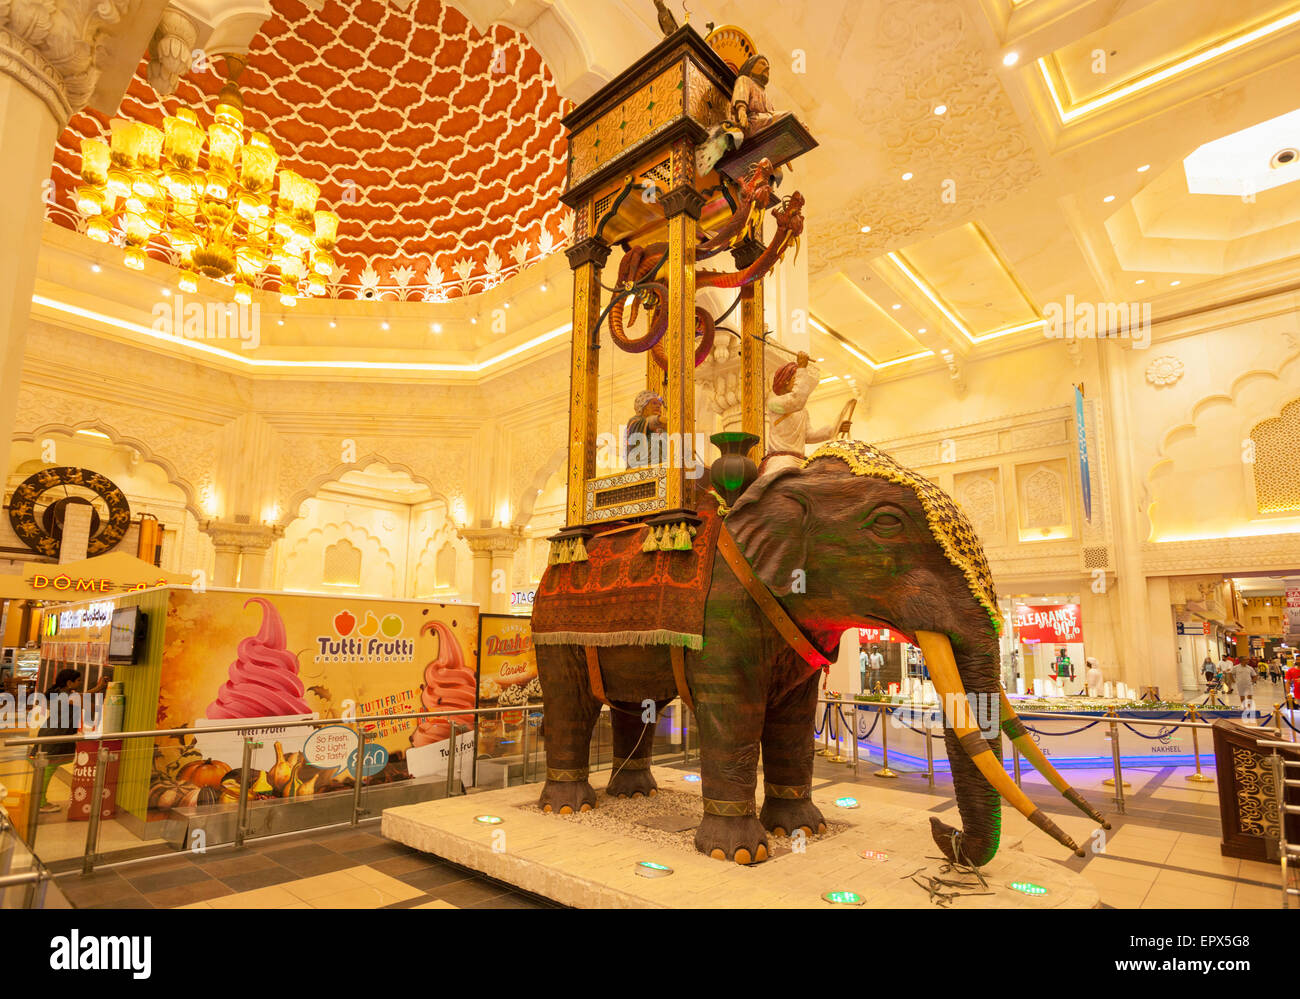 Elefant-Modell in der Indien-Gericht von der Ibn Battuta Mall, Dubai City, Vereinigte Arabische Emirate, Vereinigte Arabische Emirate, Naher Osten Stockfoto